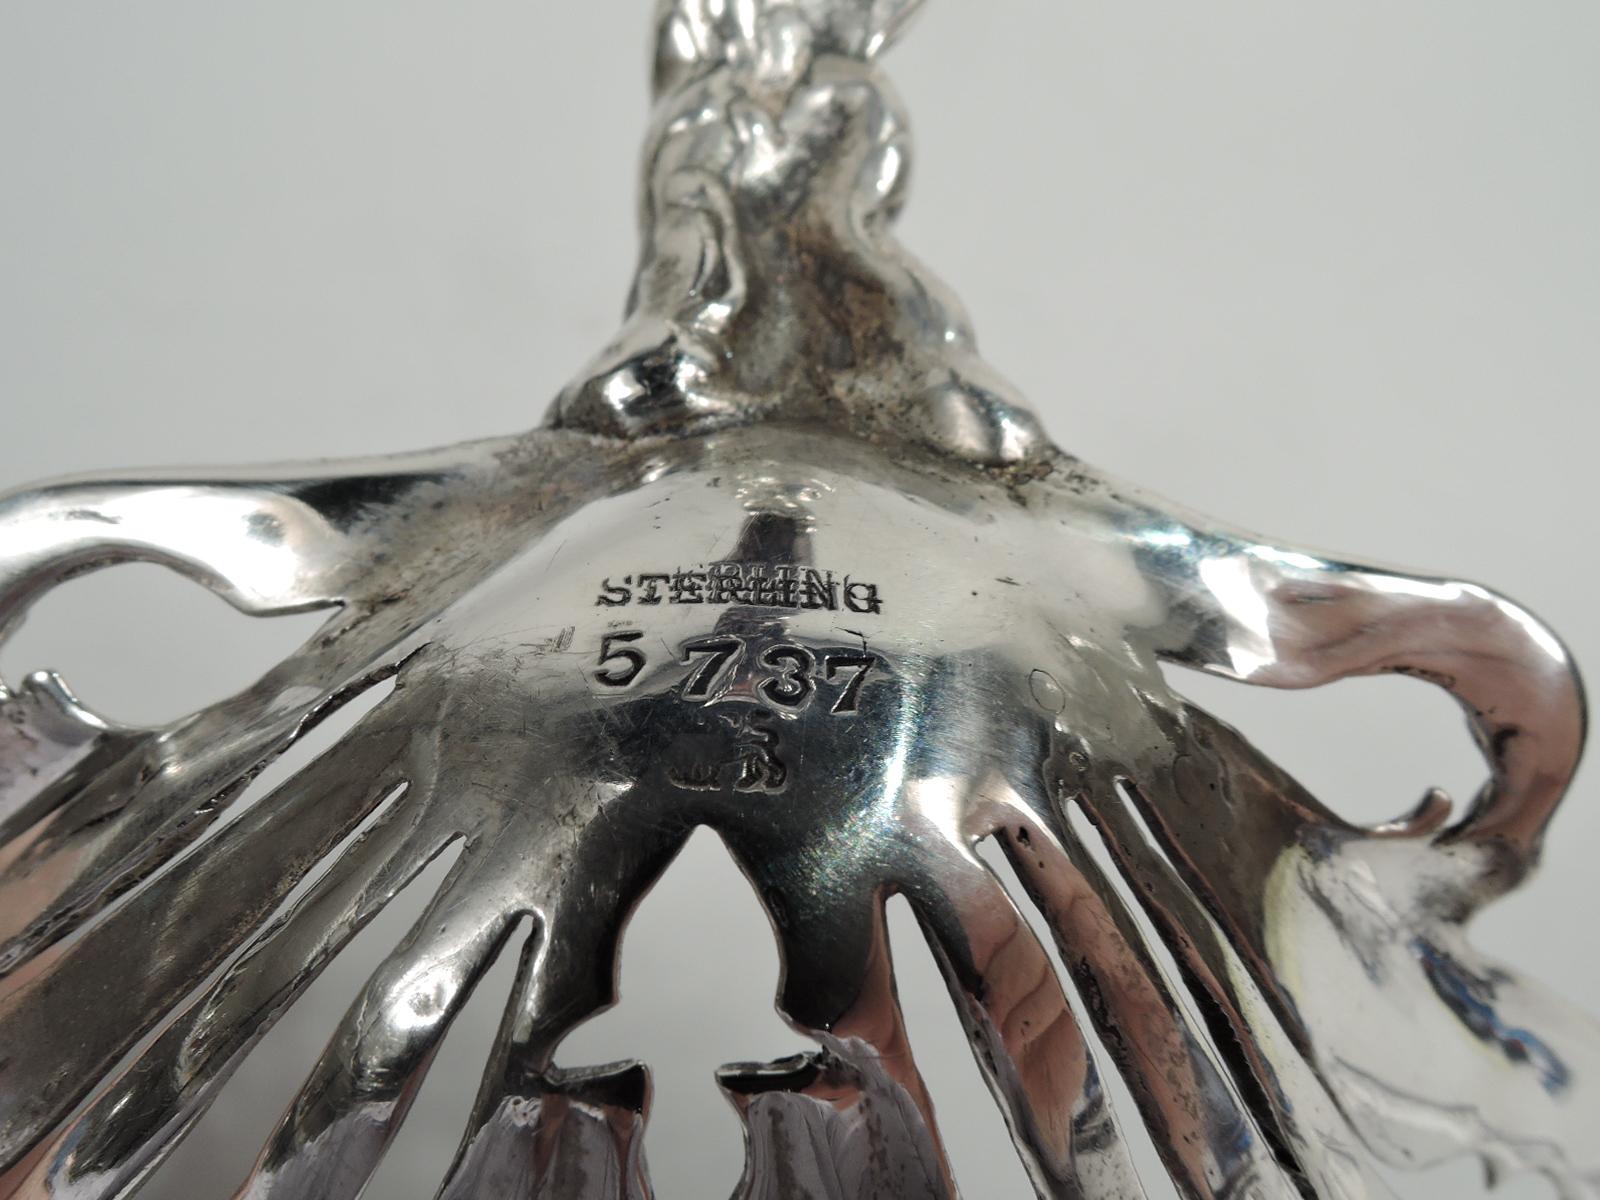 Antique Whiting Edwardian Art Nouveau Sterling Silver Bonbon Scoop 1